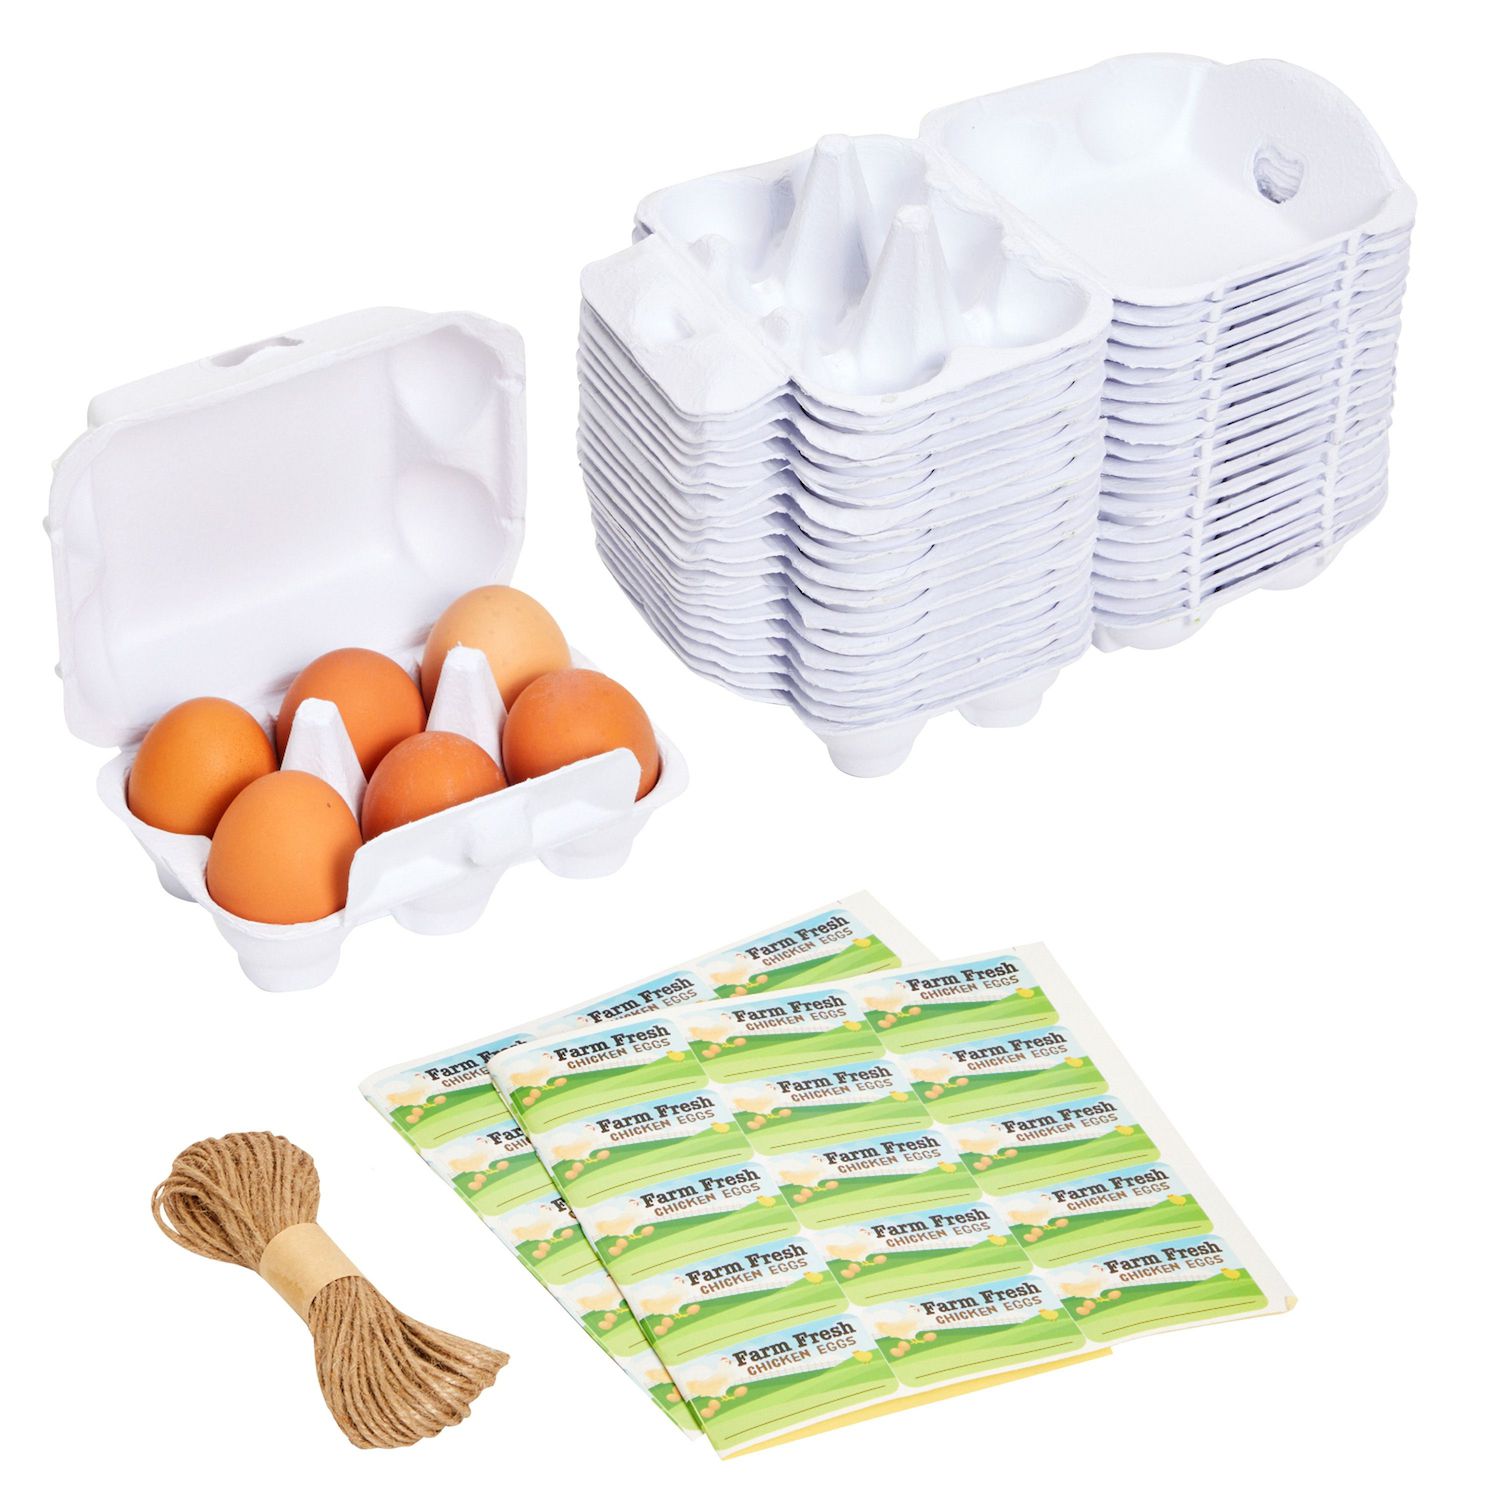 White Ceramic Egg Trays for Half Dozen Chicken Eggs, Countertop Egg Holder  (2 Pack)